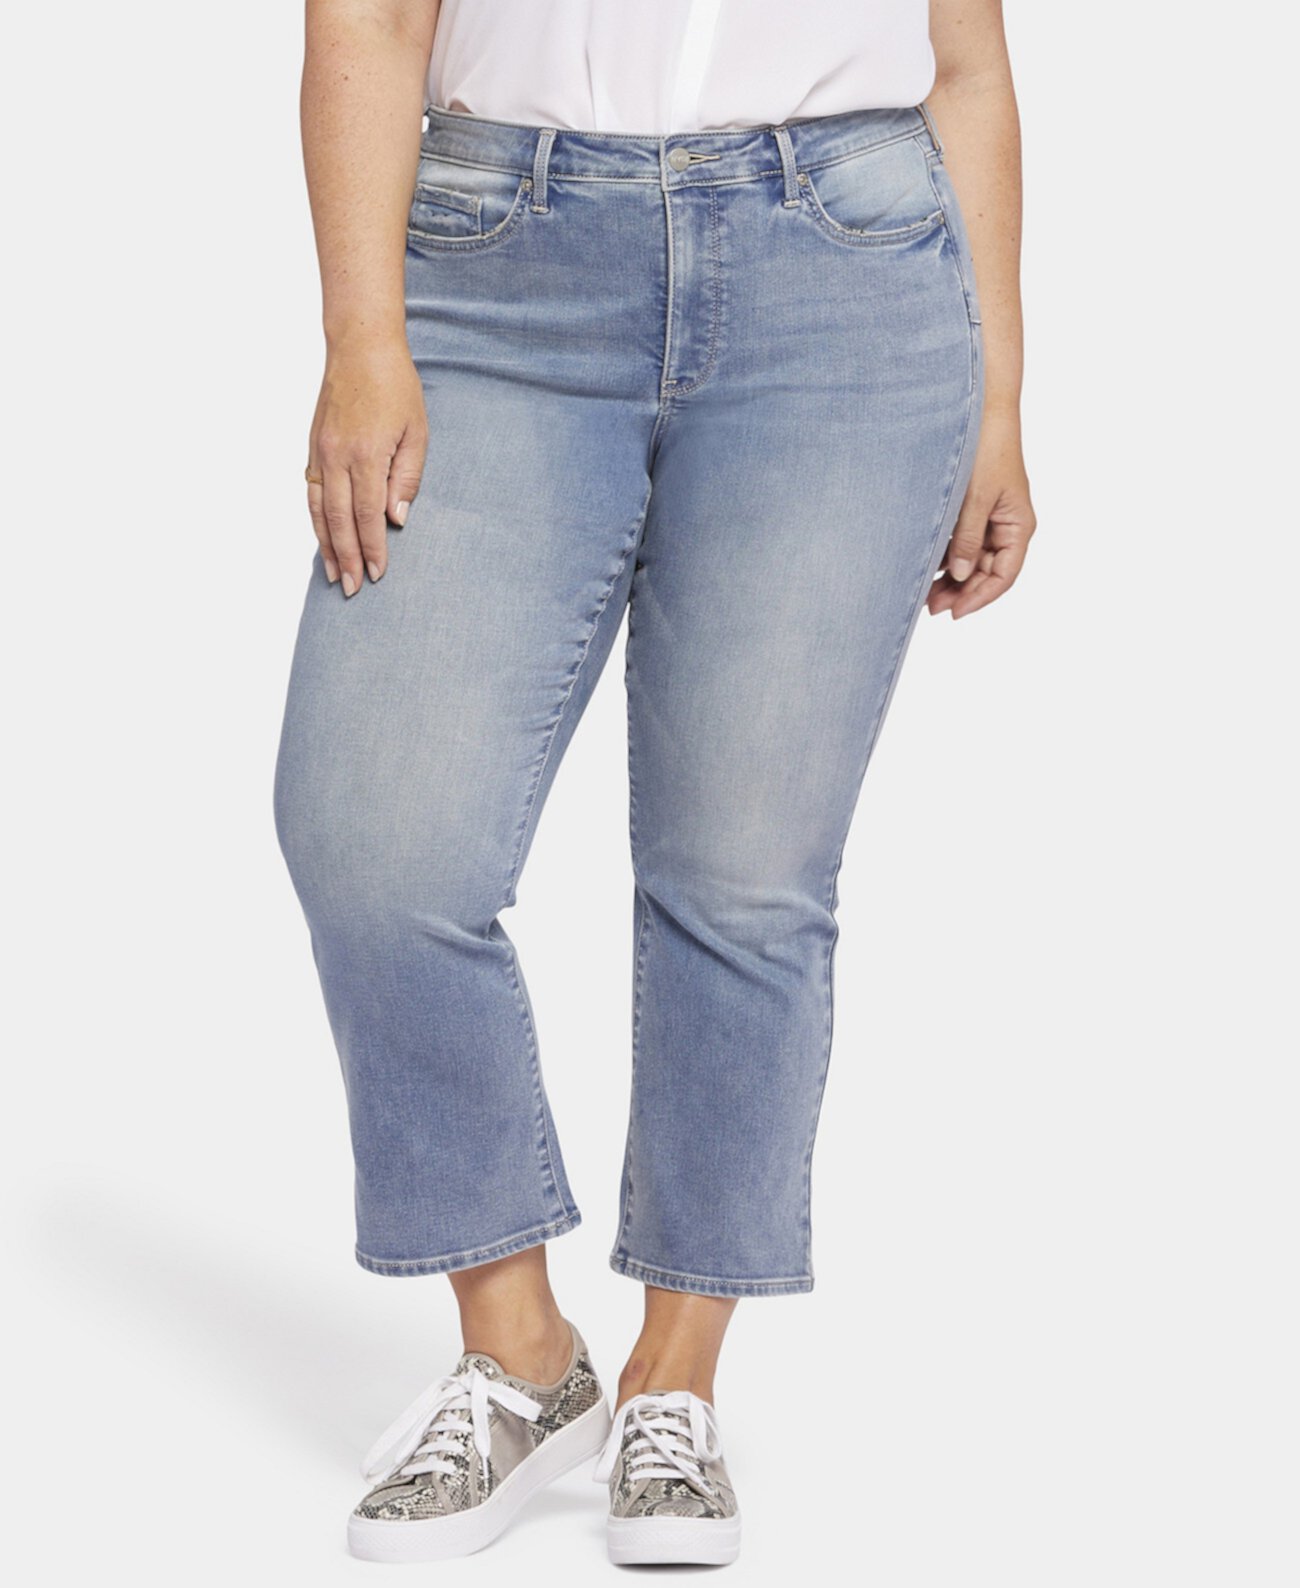 Узкие расклешенные джинсы до щиколотки больших размеров Fiona с подъемом вверх NYDJ